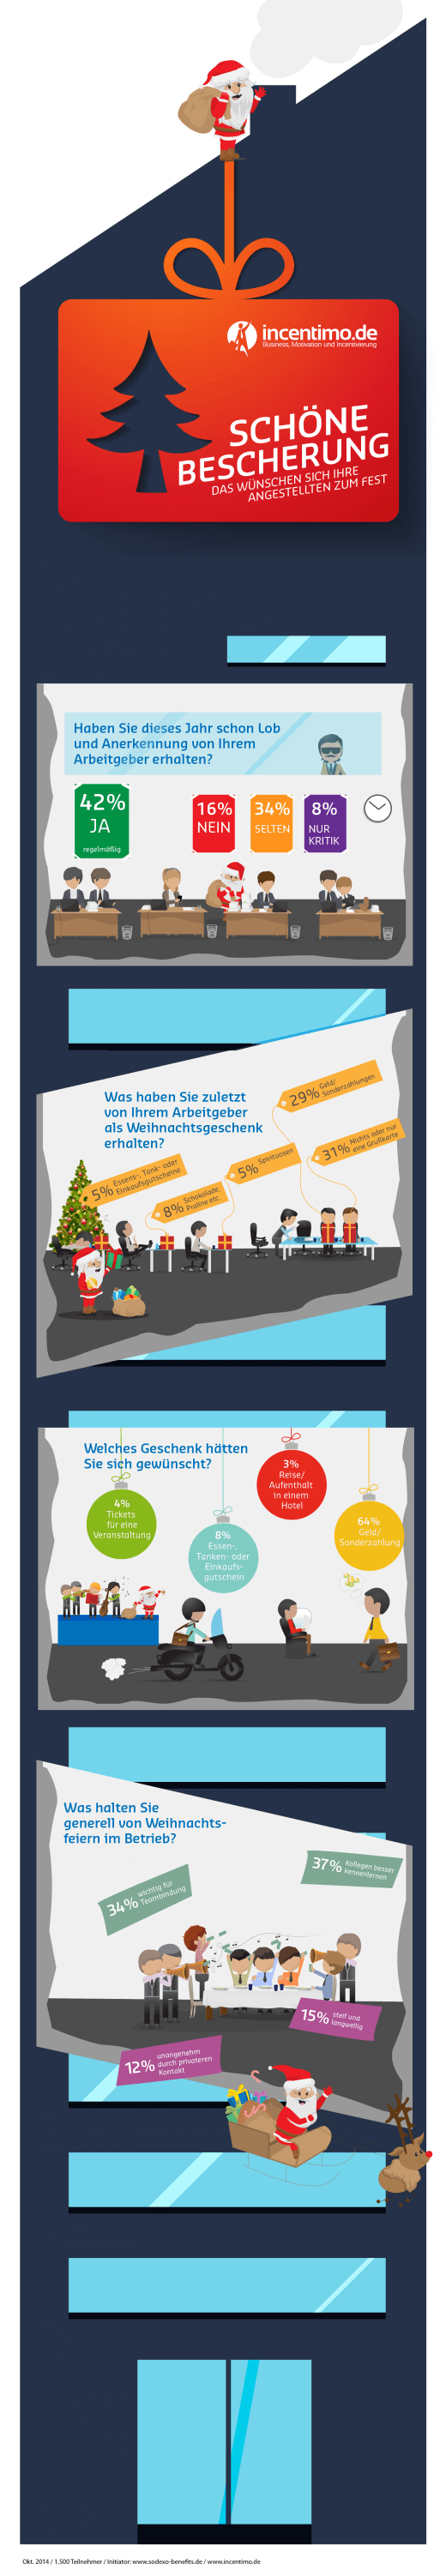 Weihnachten: So beschenken Sie Ihre Mitarbeiter richtig! [Infografik]